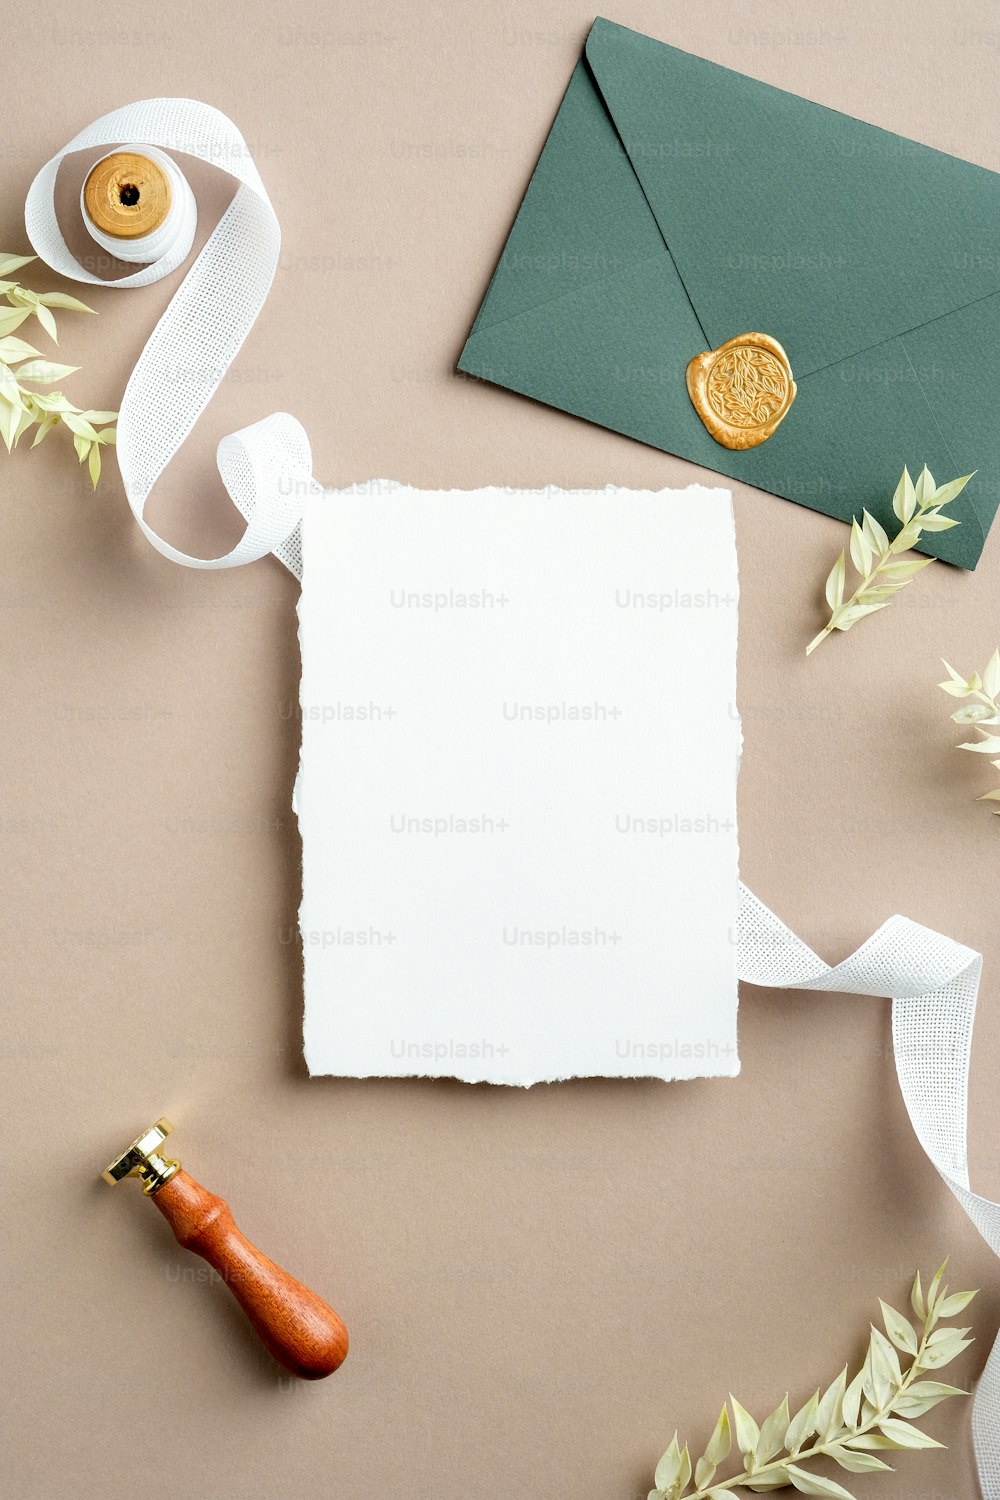 Folha de papel rasgada, fita de seda, envelope verde com selo de cera, flores secas no fundo bege pastel. Modelo de cartão de convite de casamento. Flat lay, vista superior, espaço de cópia.